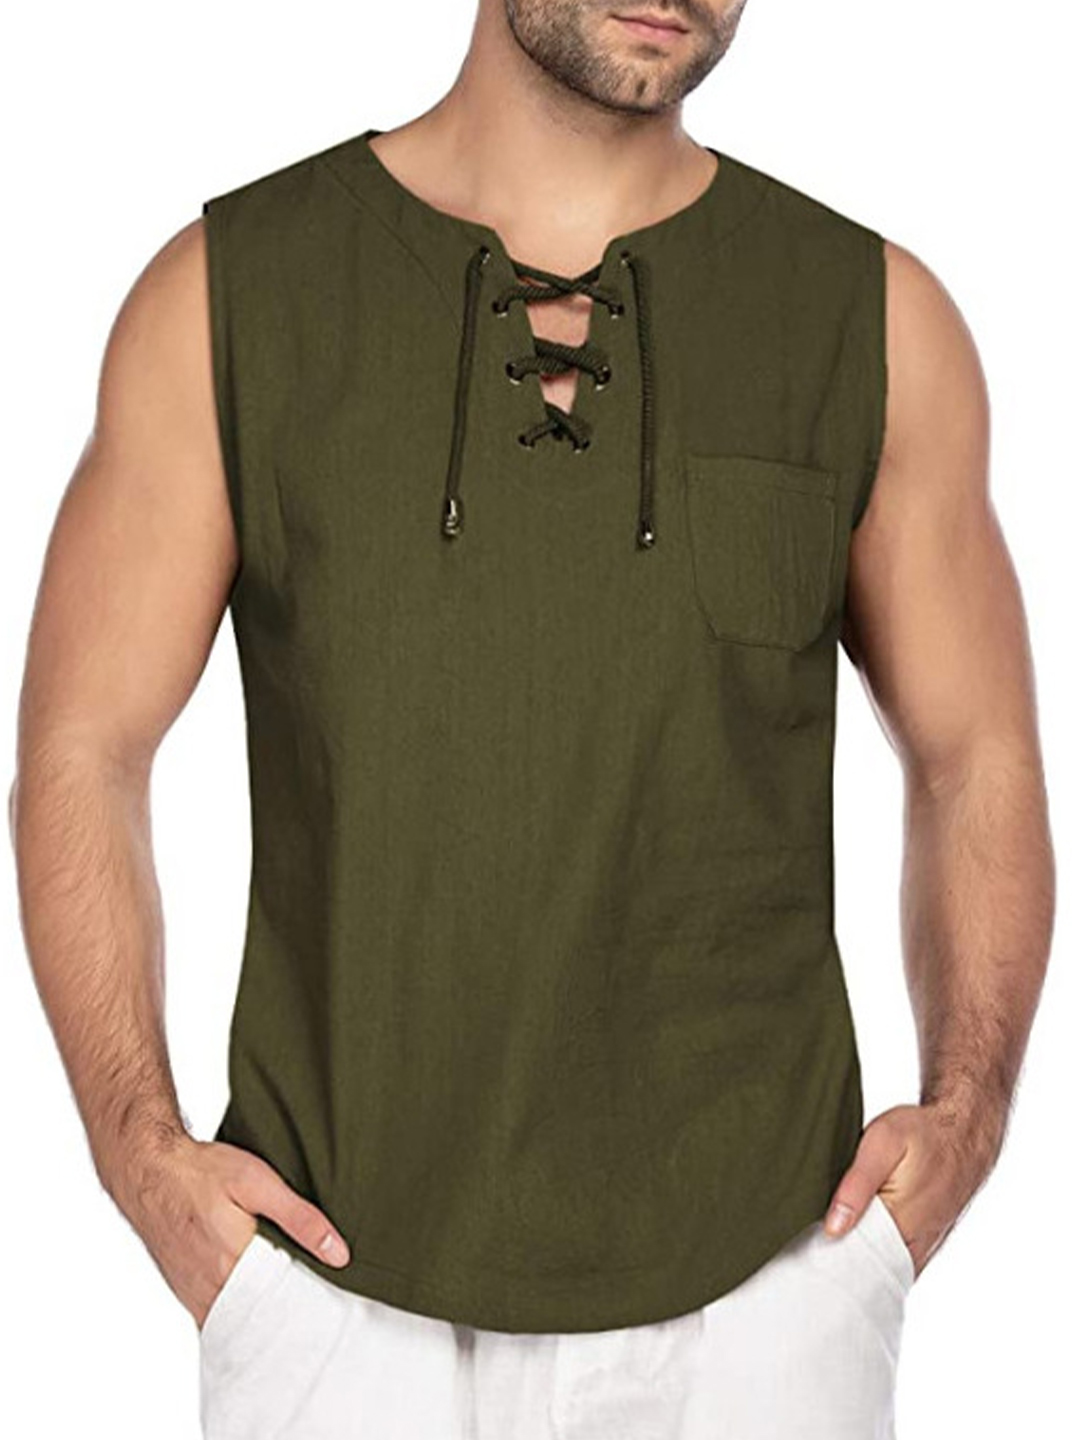 Men's Drawstring Solid Color Gym Vest